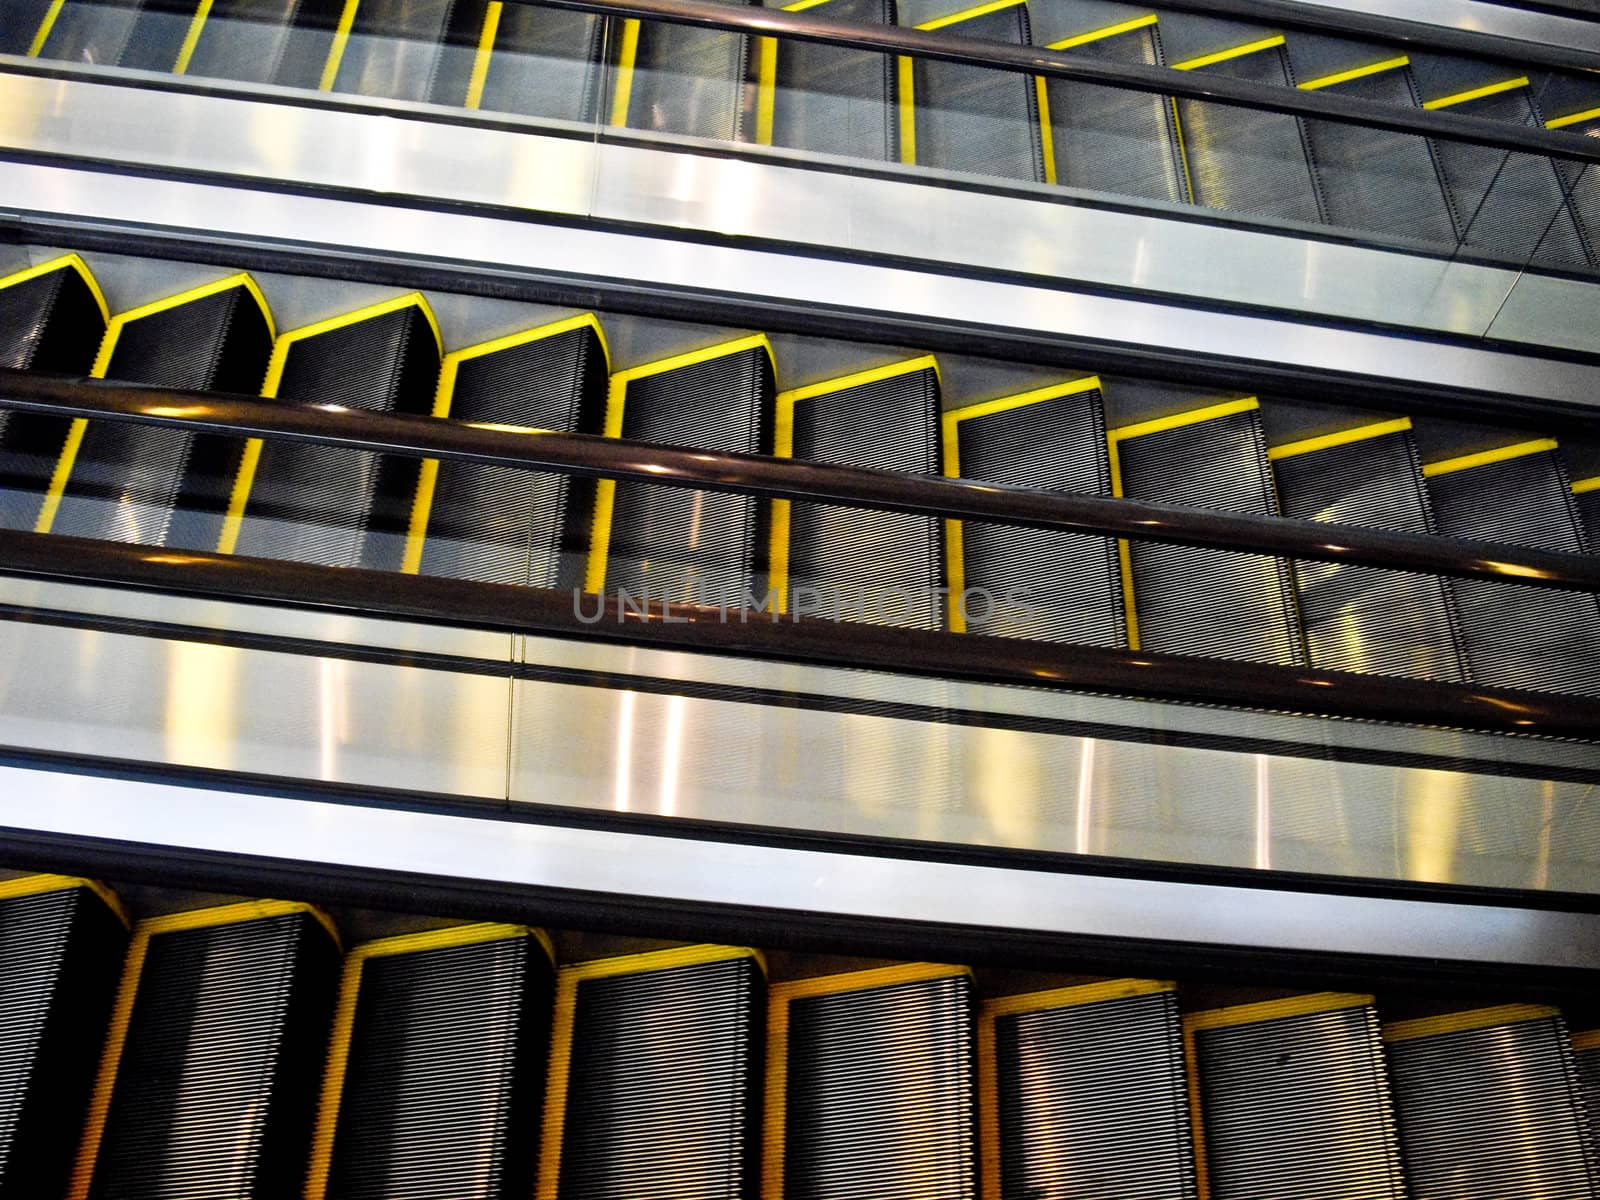 Escalators by emattil